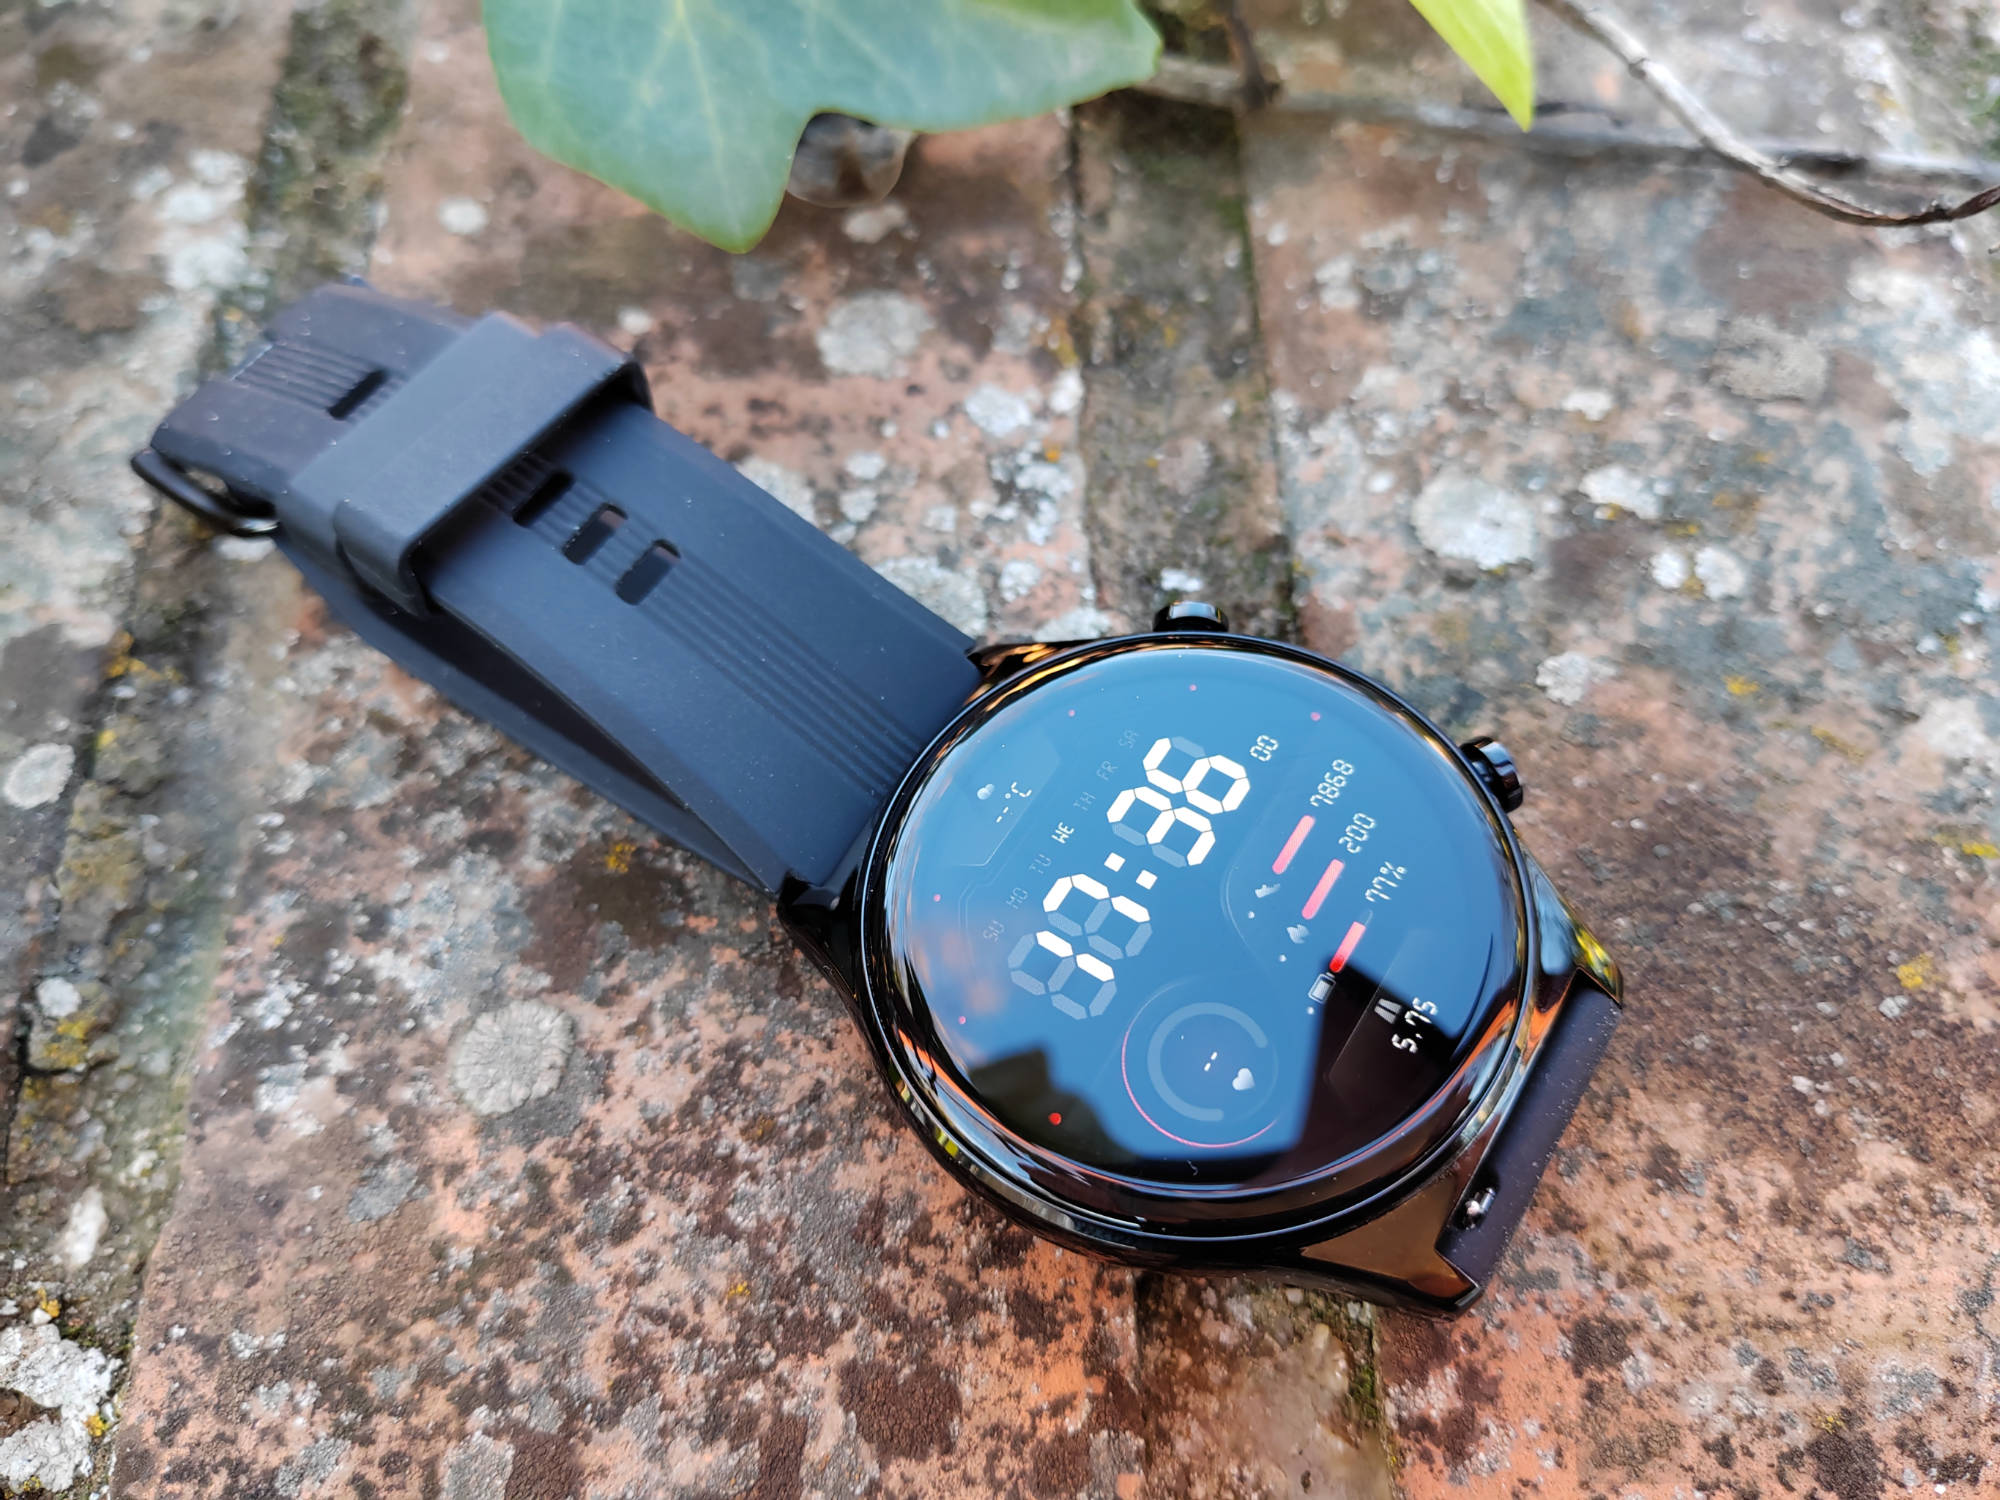 Nuevo smartwatch de la marca Honor, Watch GS 3: características y precio